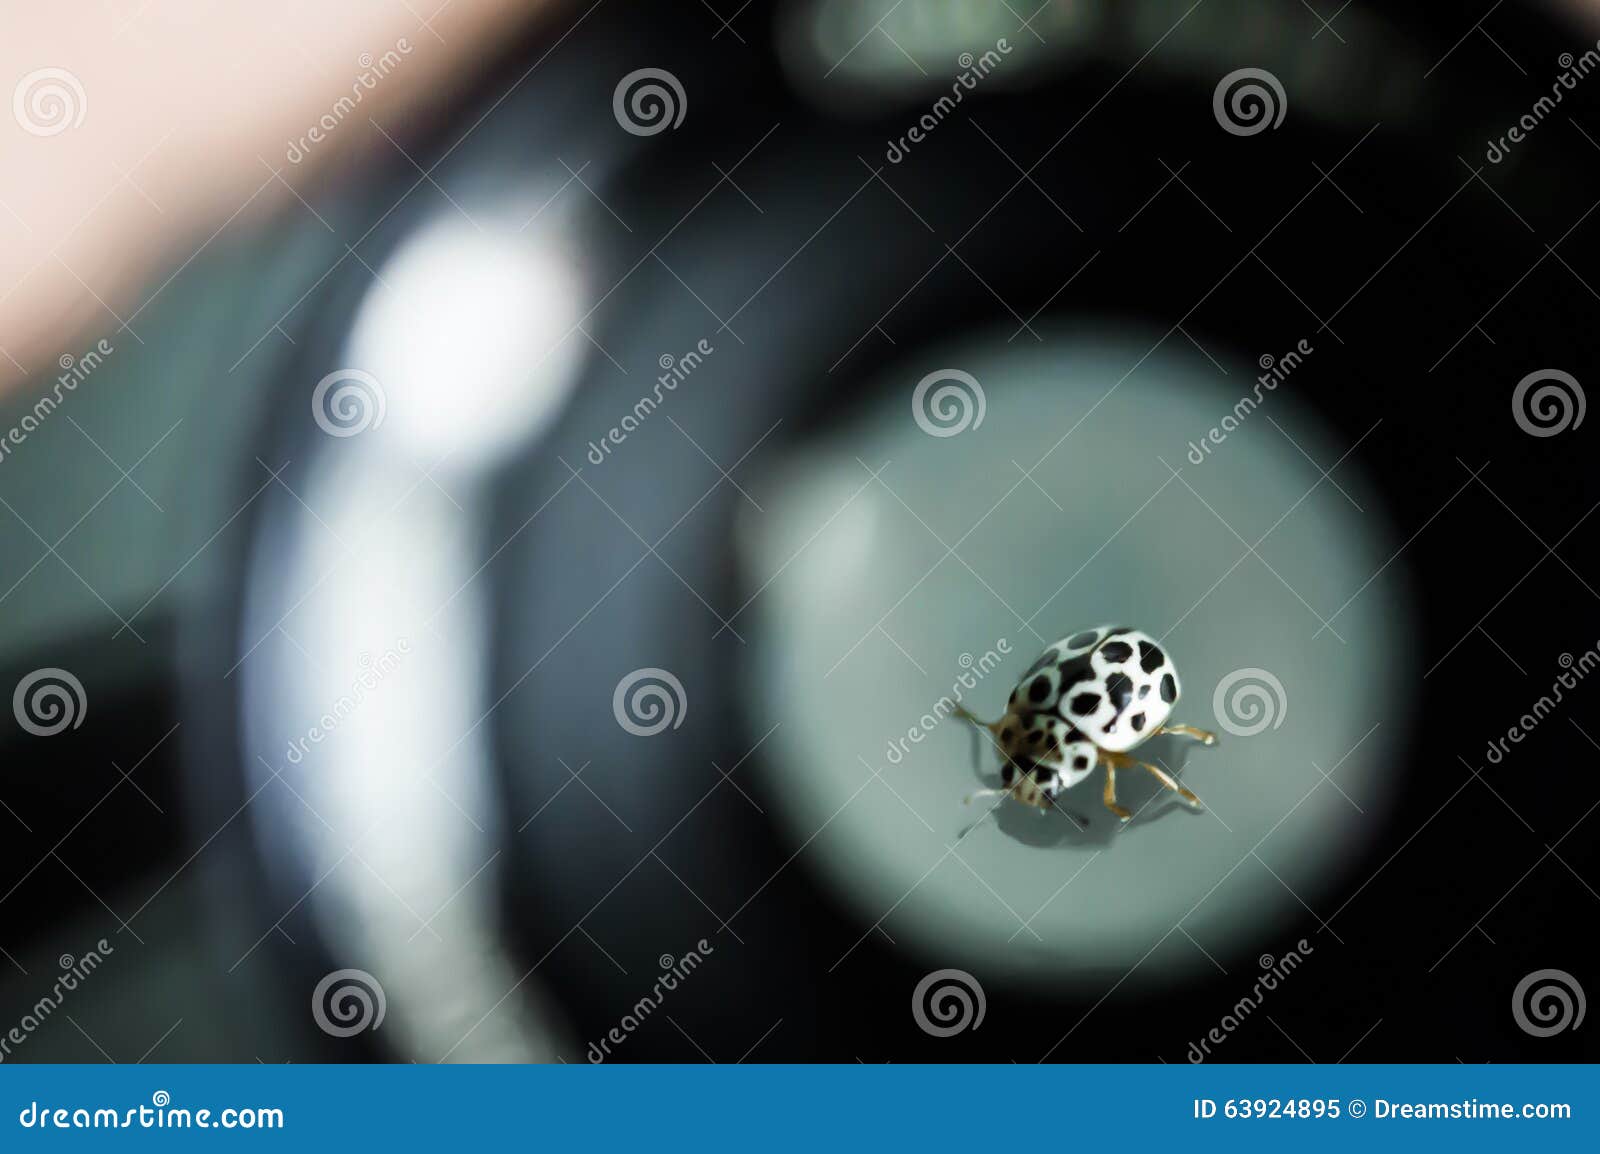 ladybug monochrome in macro picture